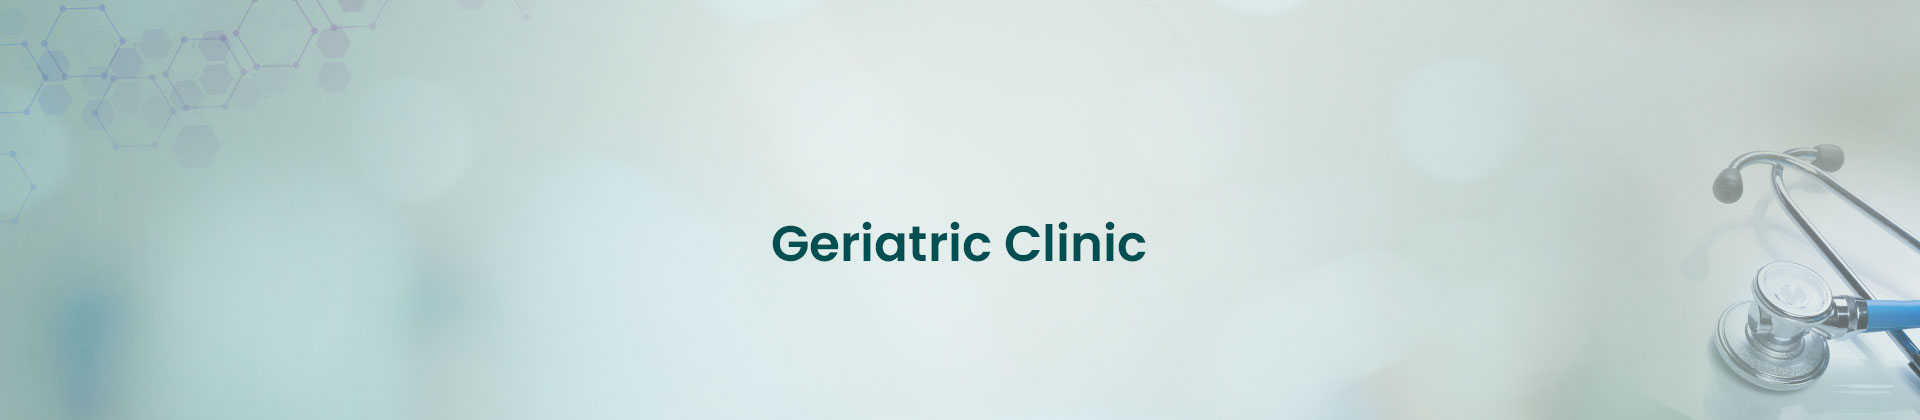 Geriatric Clinic